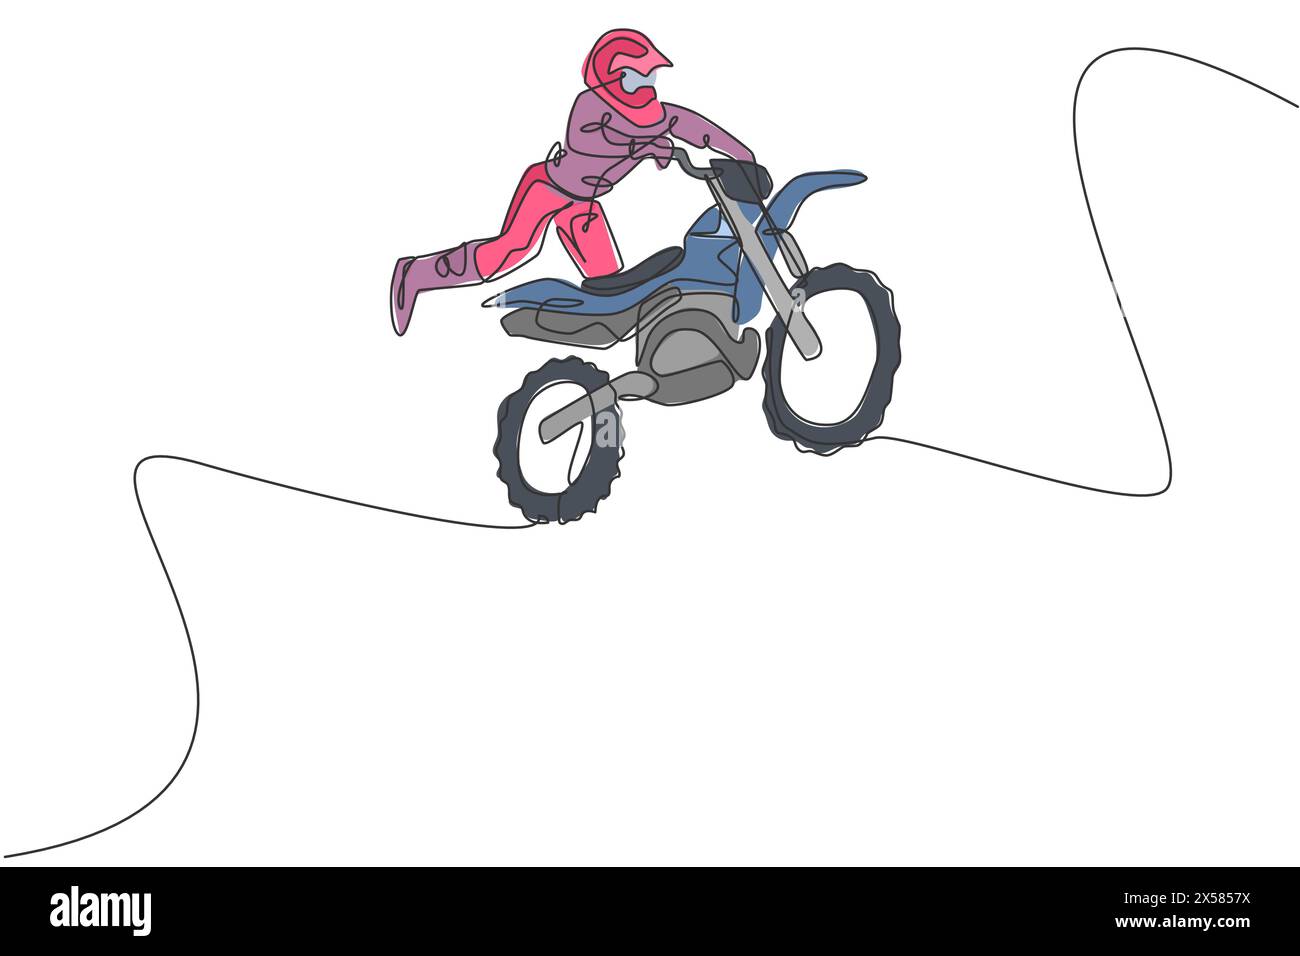 Un disegno su una sola linea di un giovane pilota di motocross che vola freestyle sulla pista da gara illustrazione grafica vettoriale. Concetto di sport estremi. Moderno e continuo Illustrazione Vettoriale